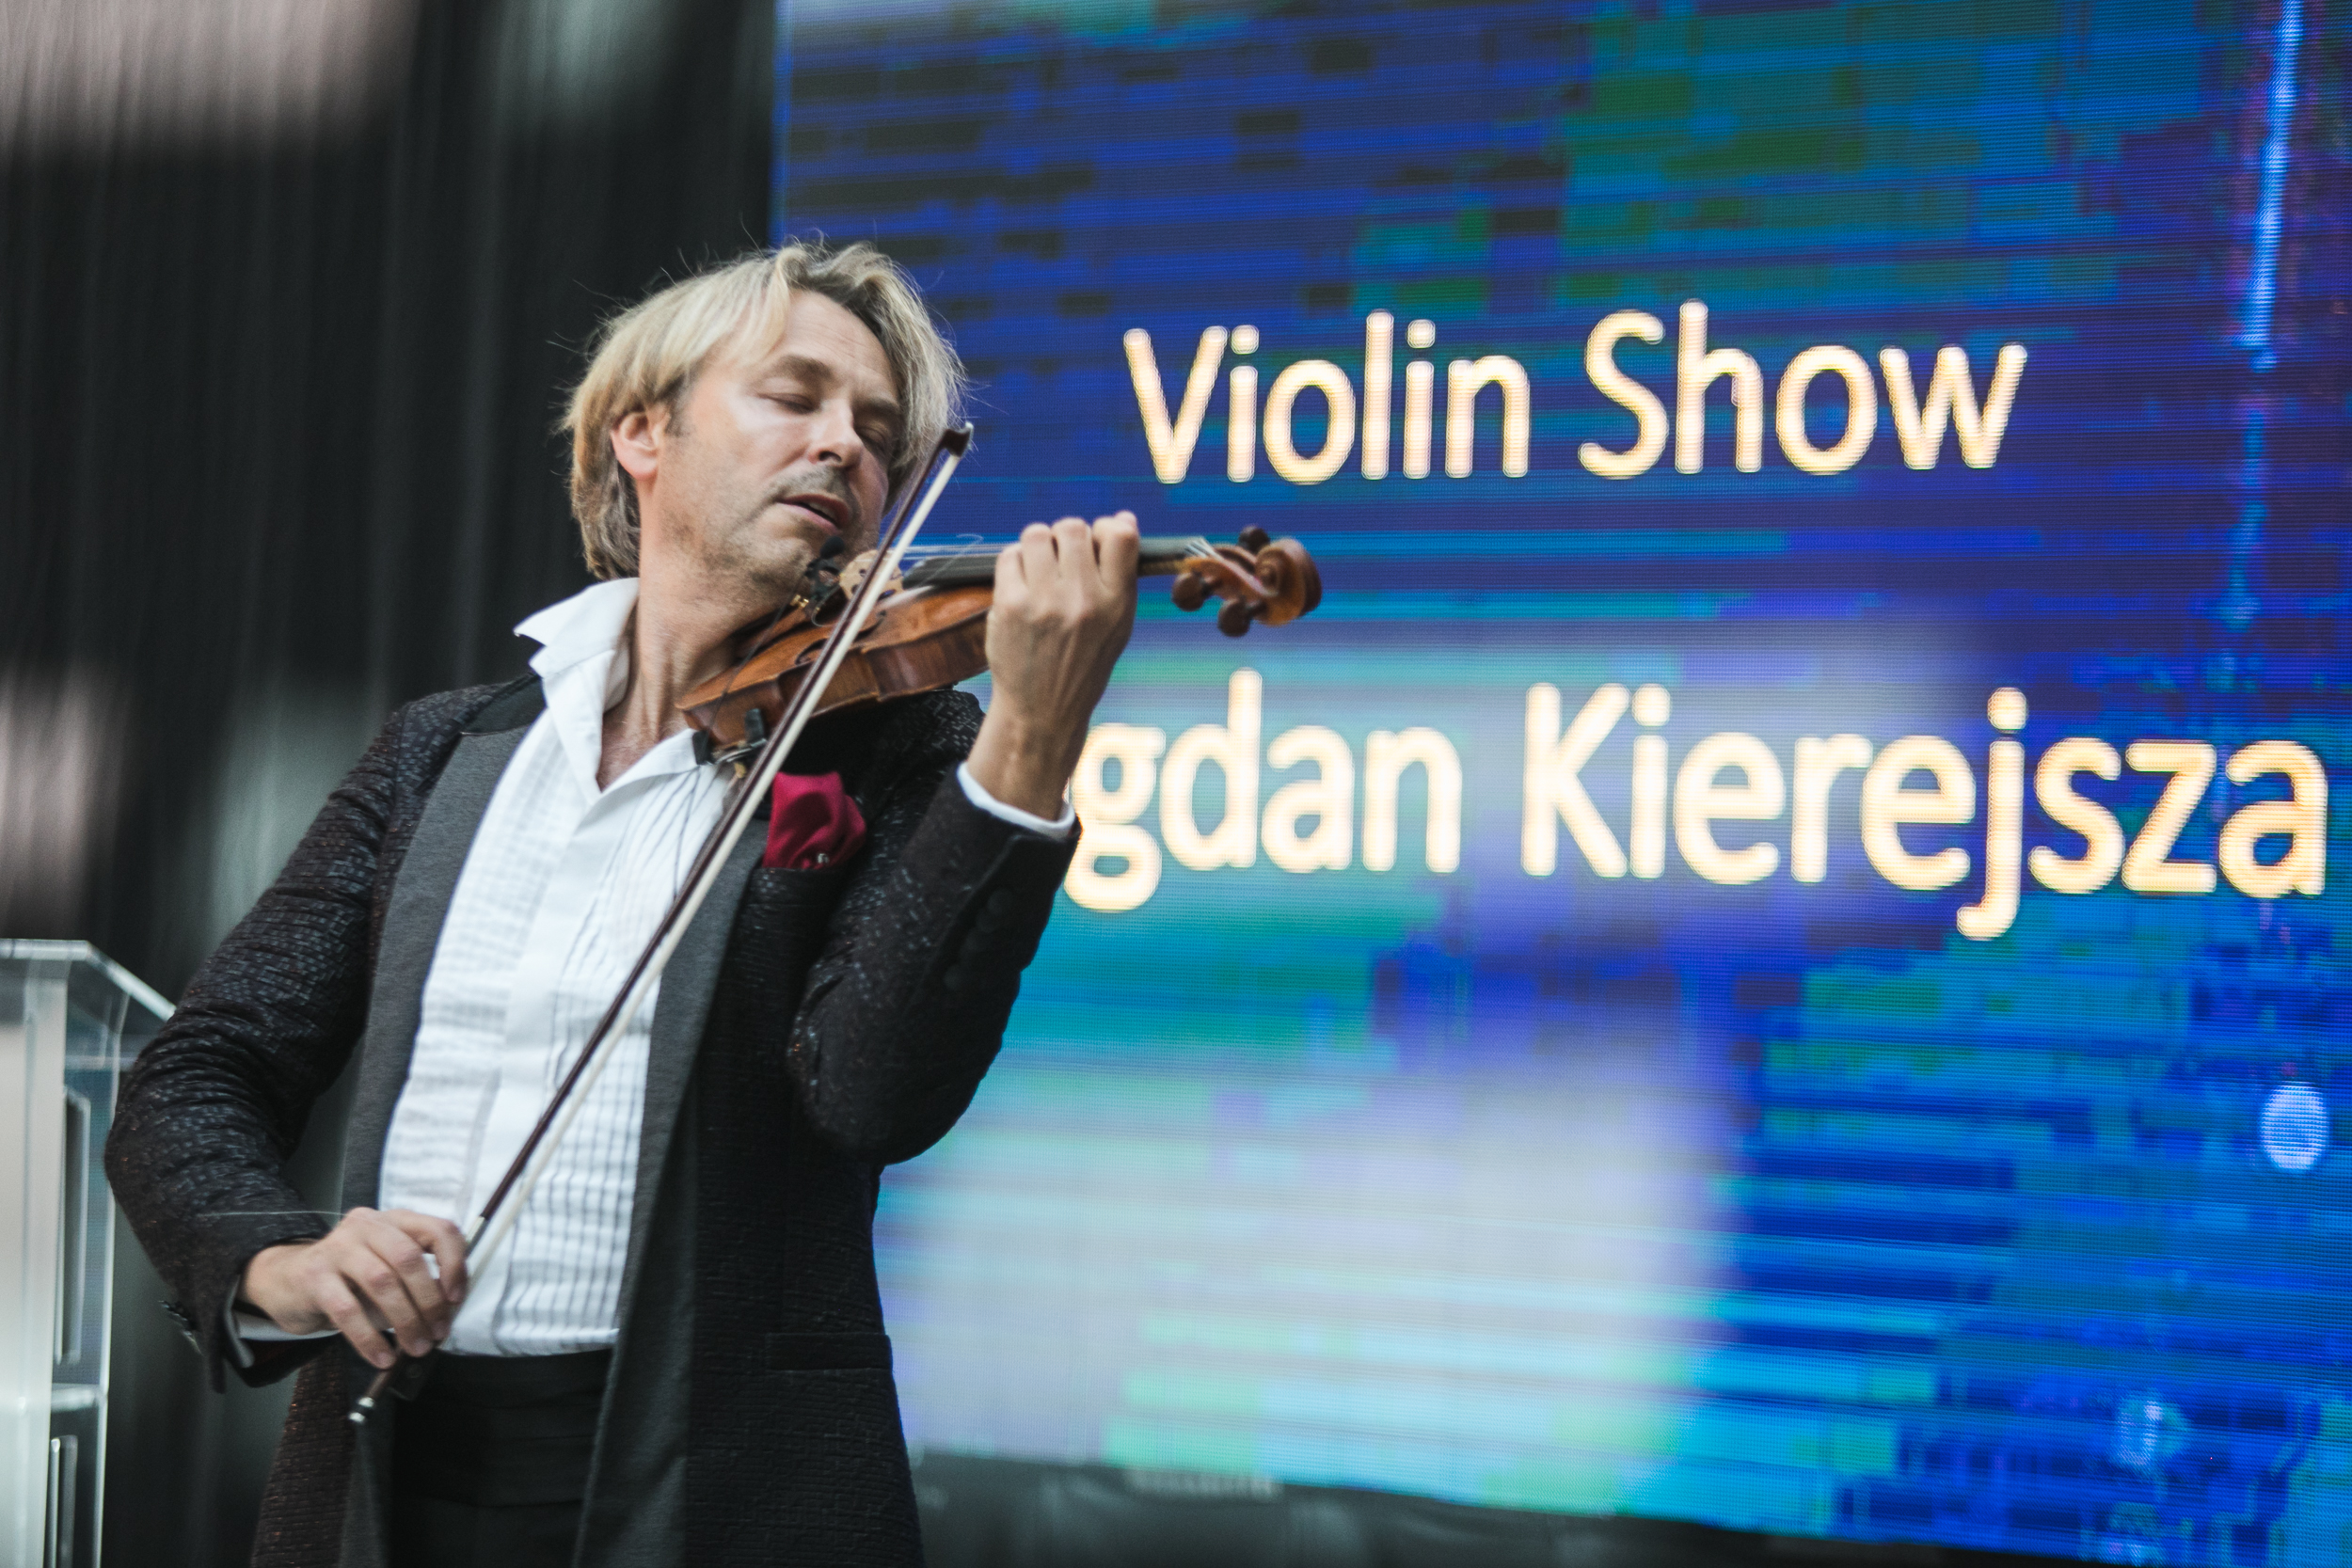 Na zdjęciu Bogdan Kierejsza grający na skrzypcach.